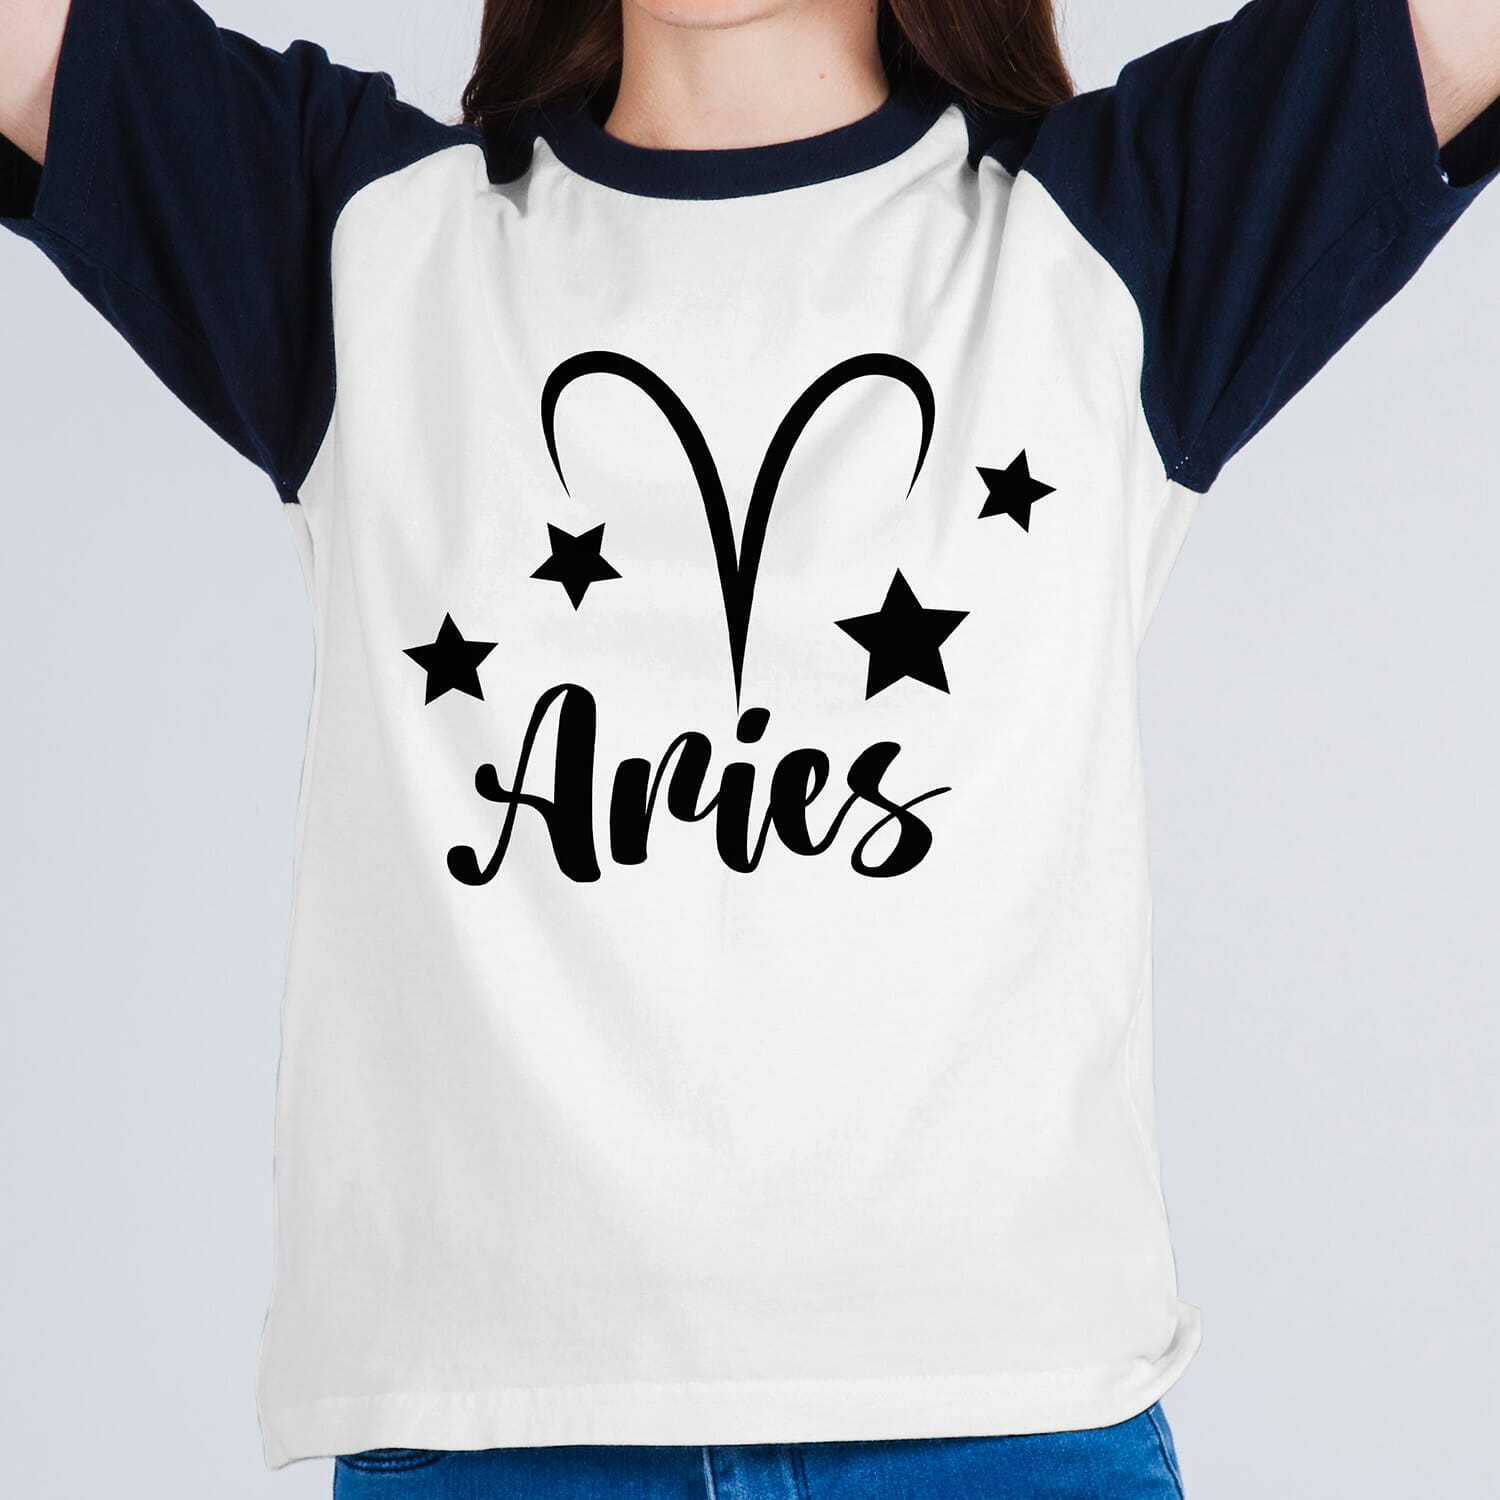 Aries Horoscope Tshirt design